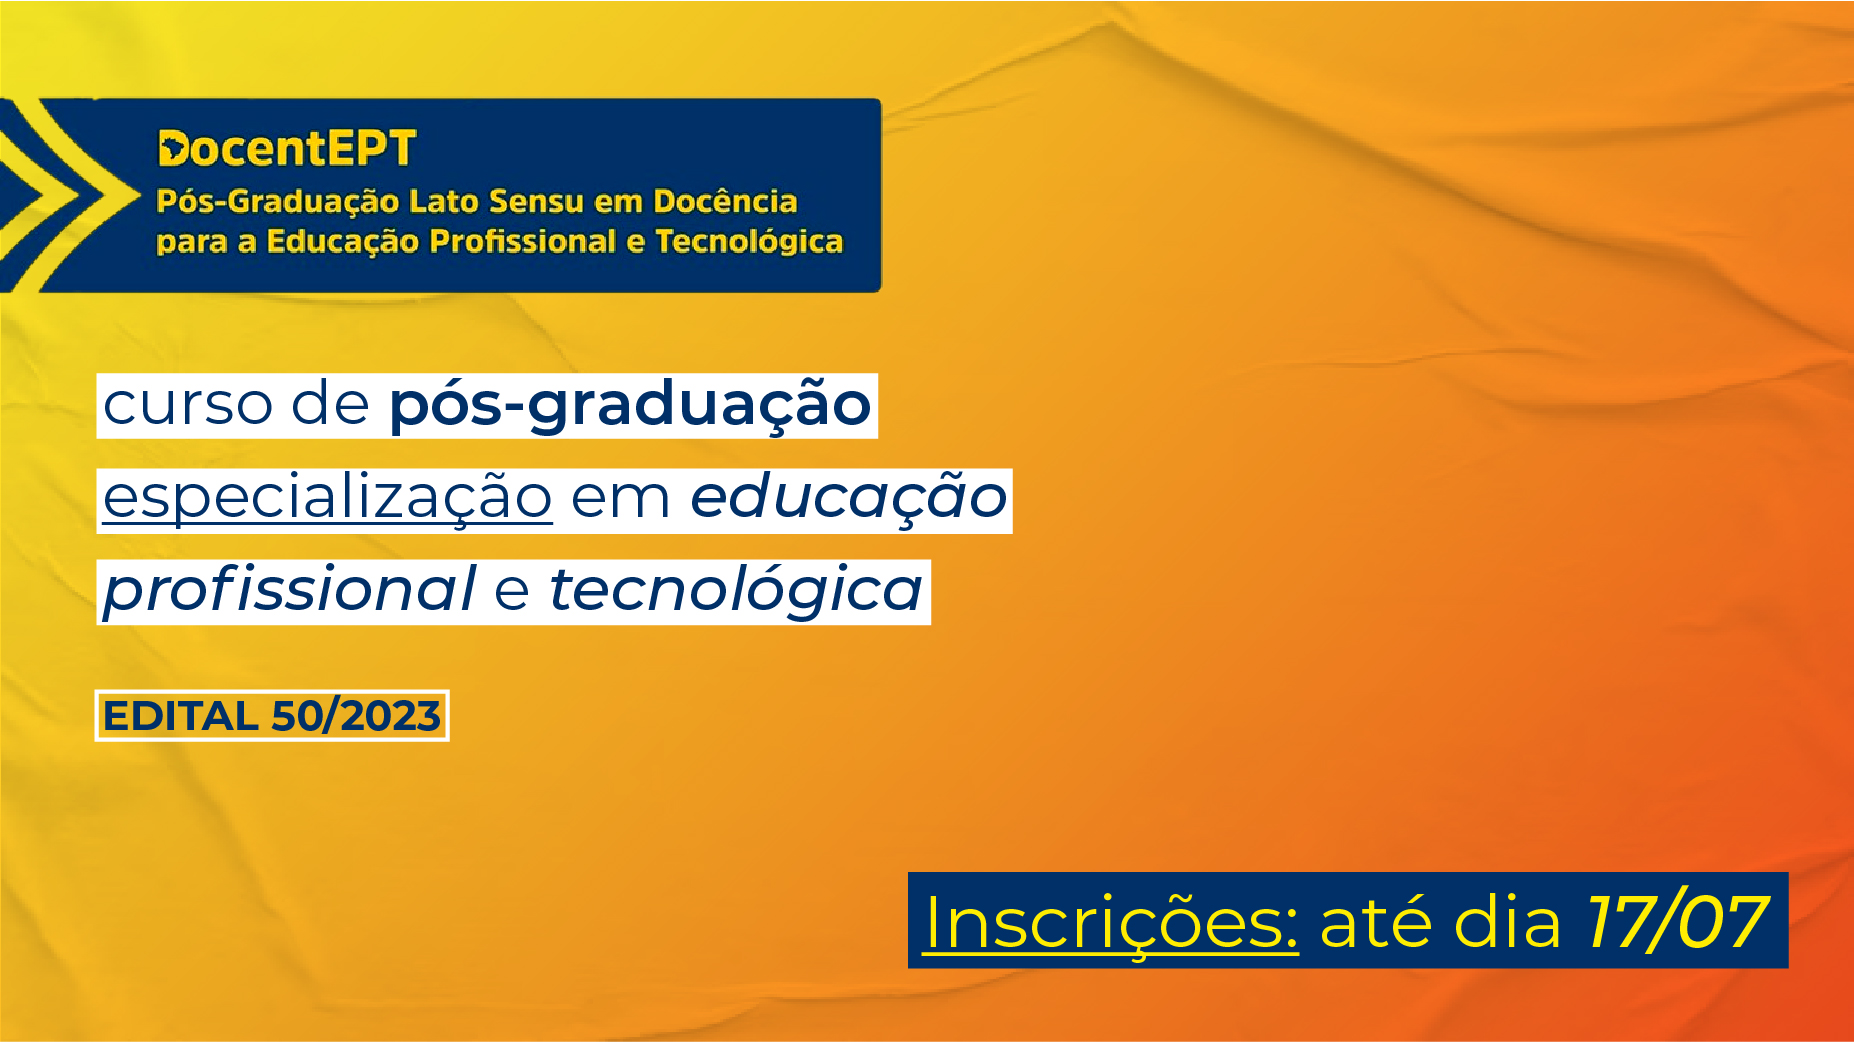 Professores de Minas Gerais podem se inscrever para pós-graduação em Educação Profissional e Tecnológica